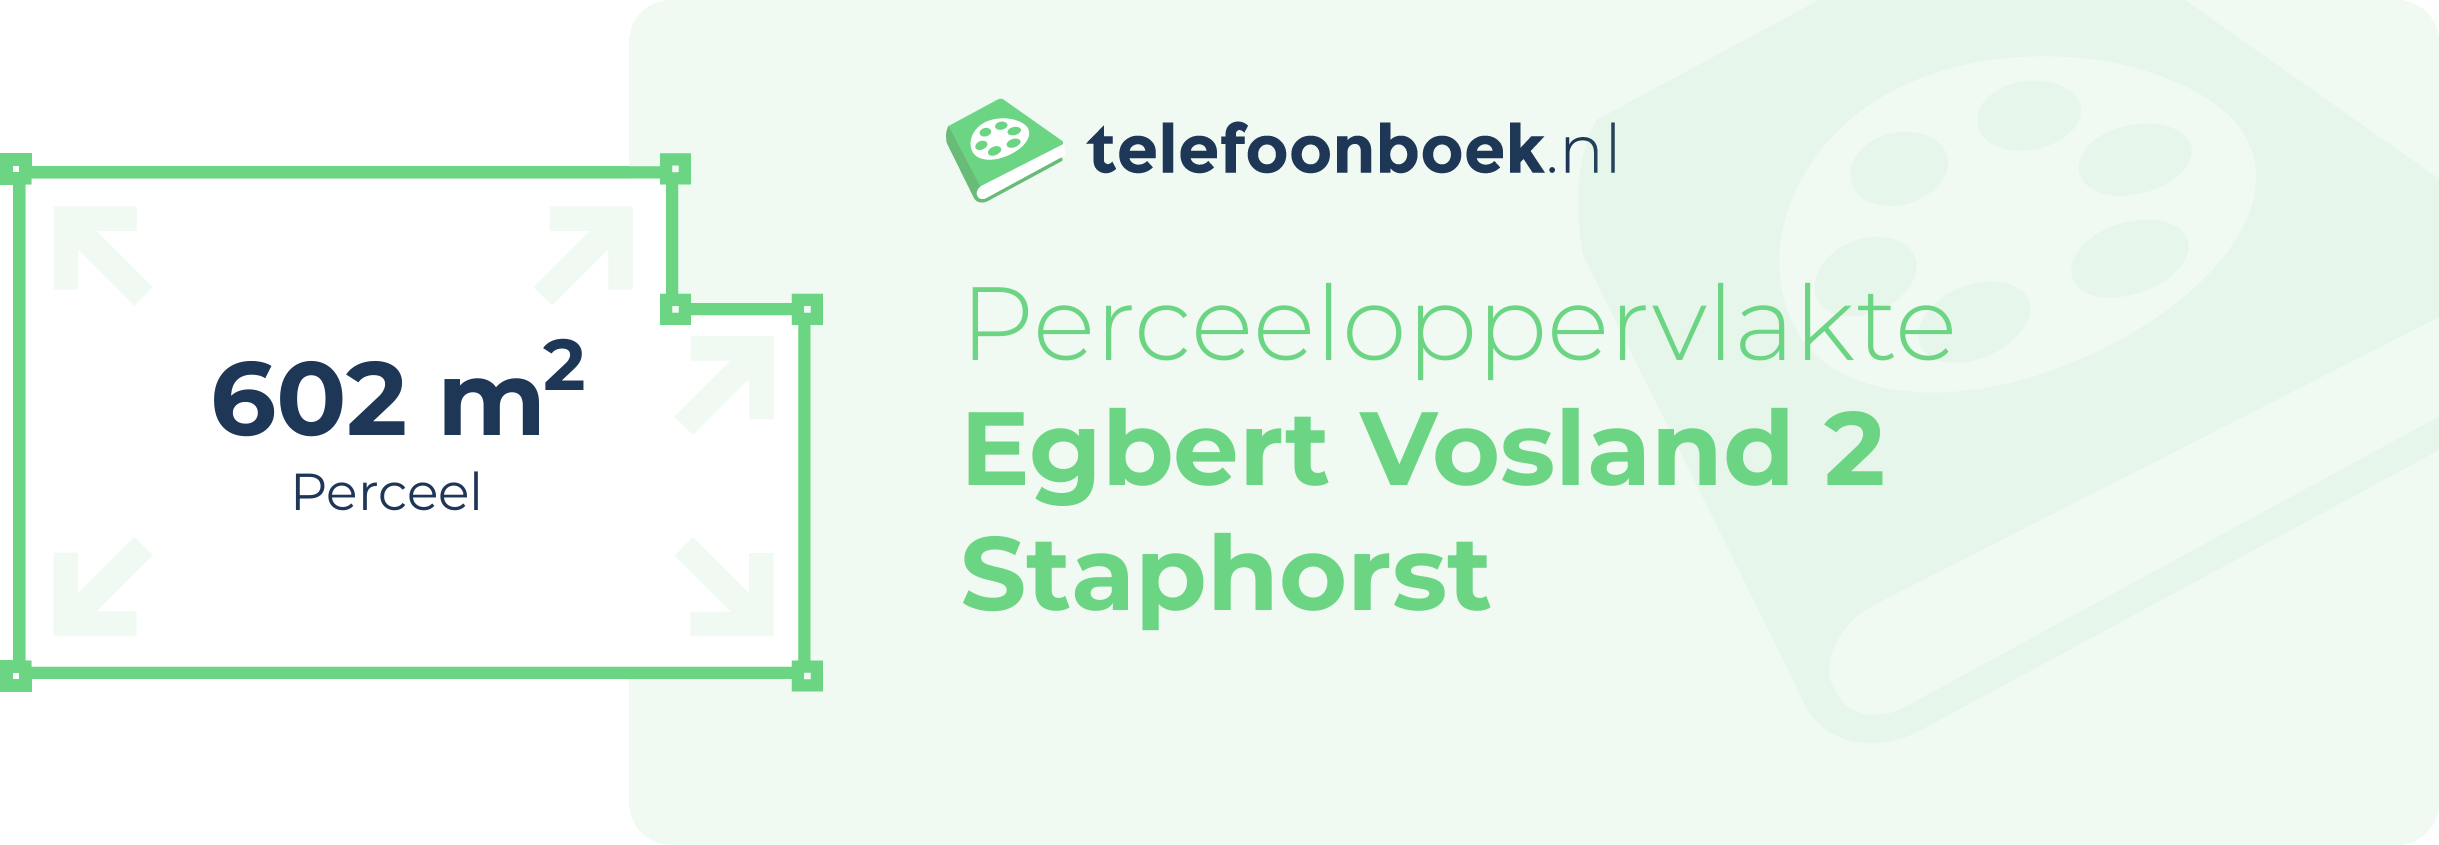 Perceeloppervlakte Egbert Vosland 2 Staphorst